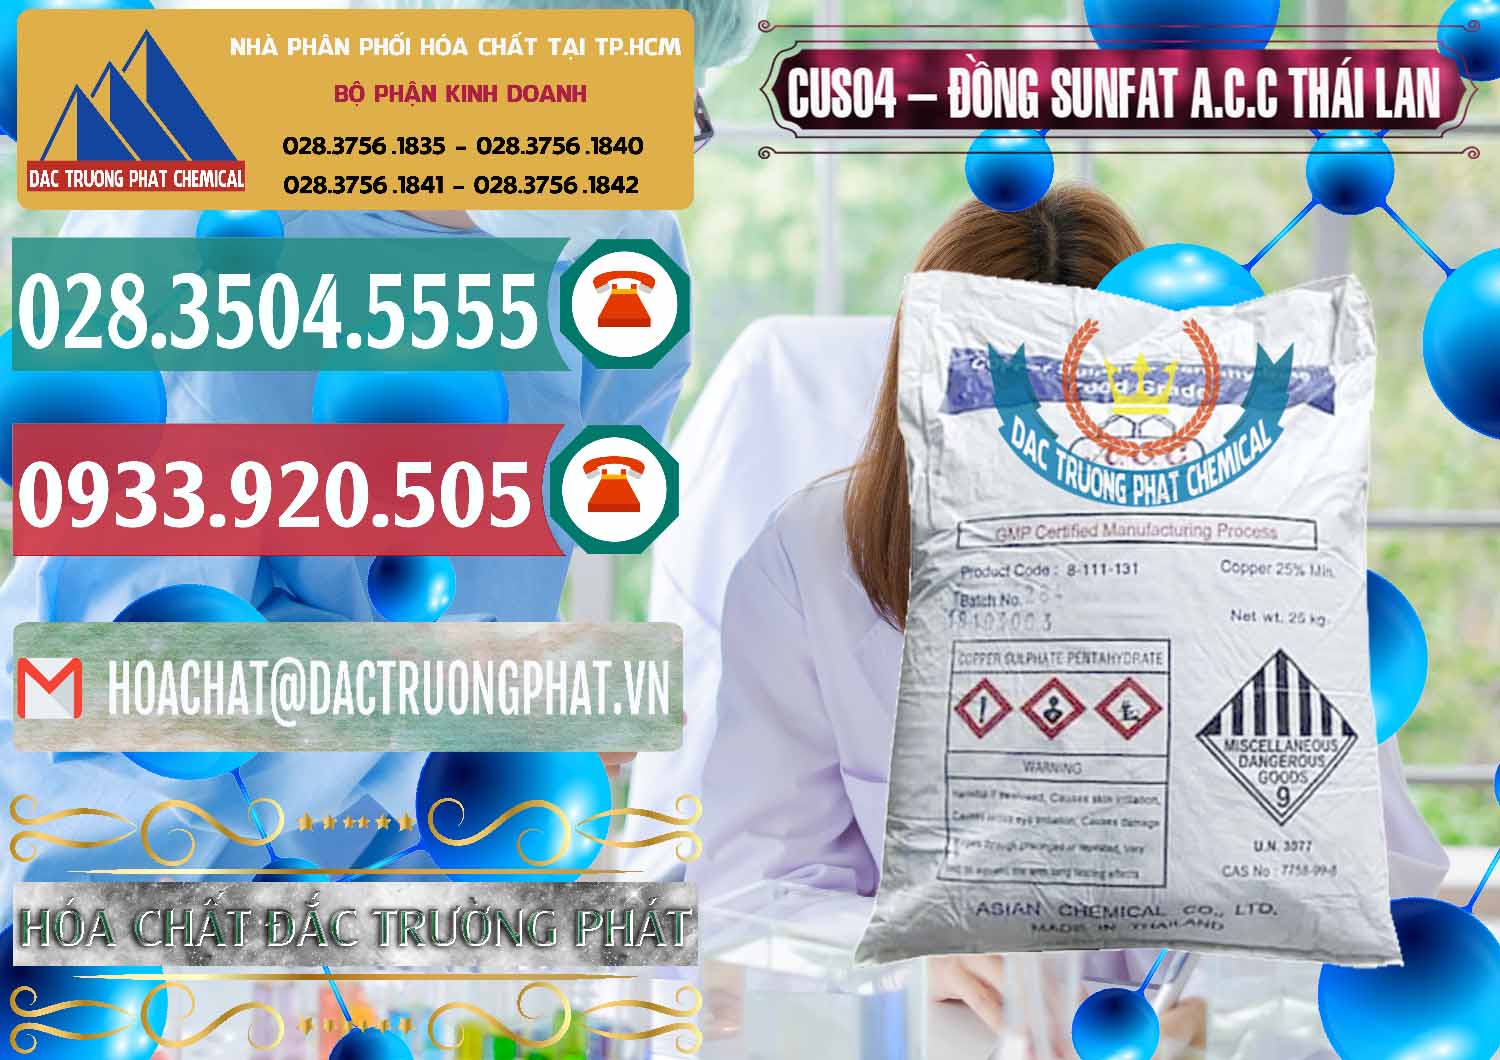 Công ty nhập khẩu & bán CuSO4 – Đồng Sunfat A.C.C Thái Lan - 0249 - Công ty chuyên bán và phân phối hóa chất tại TP.HCM - muabanhoachat.vn